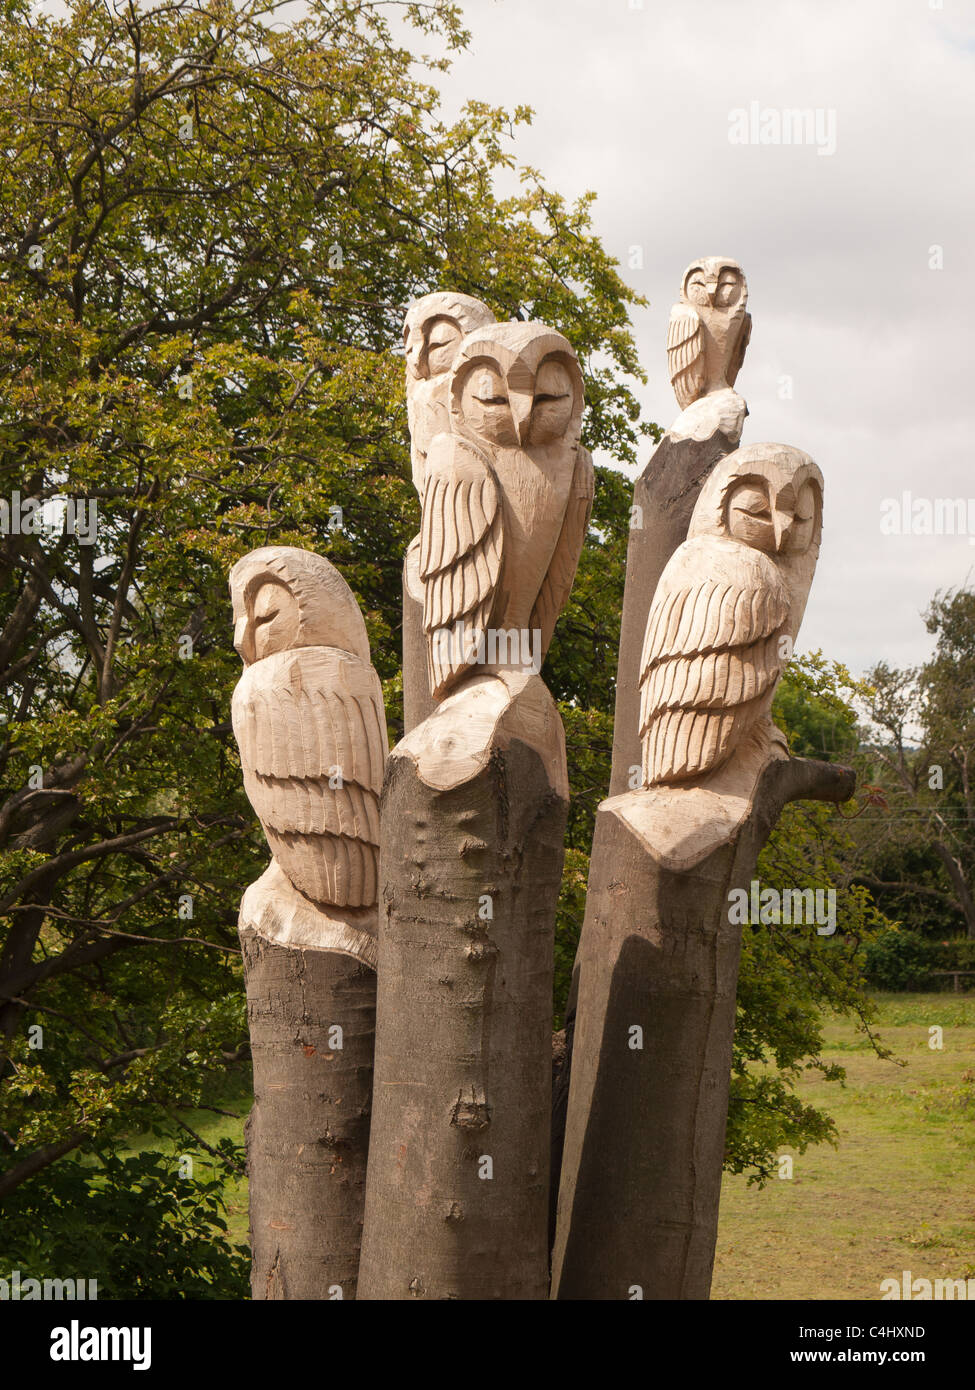 La sculpture sur bois de cinq hiboux à Guisborough Walkway Pinchinthorpe Cleveland UK Banque D'Images